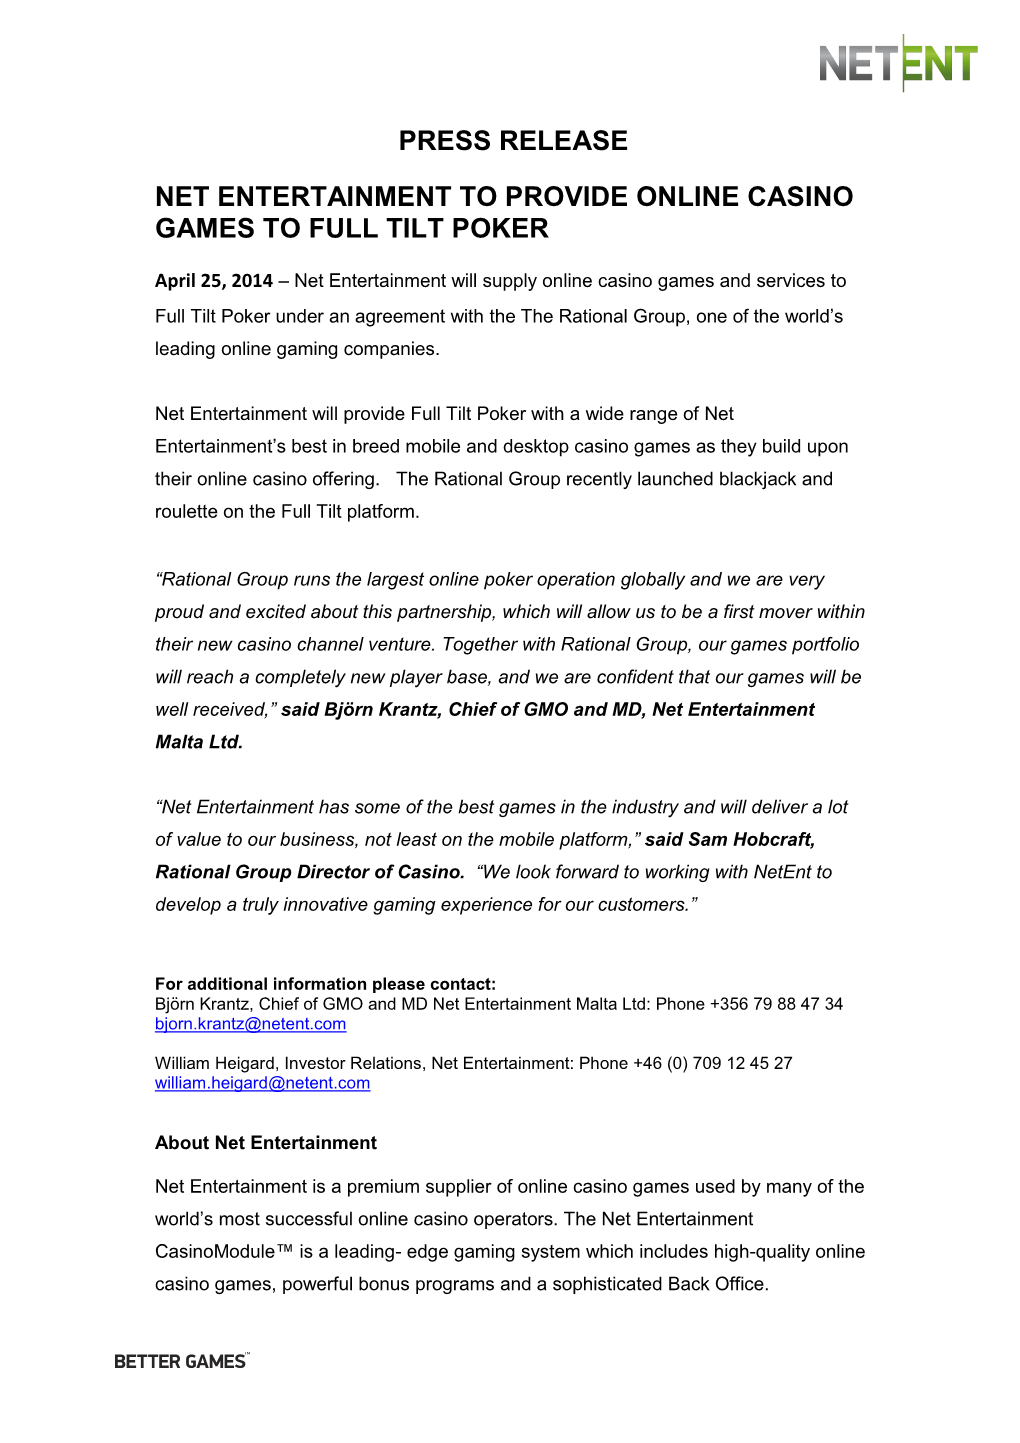 Press Release Net Entertainment to Provide Online Casino Games to Full Tilt Poker